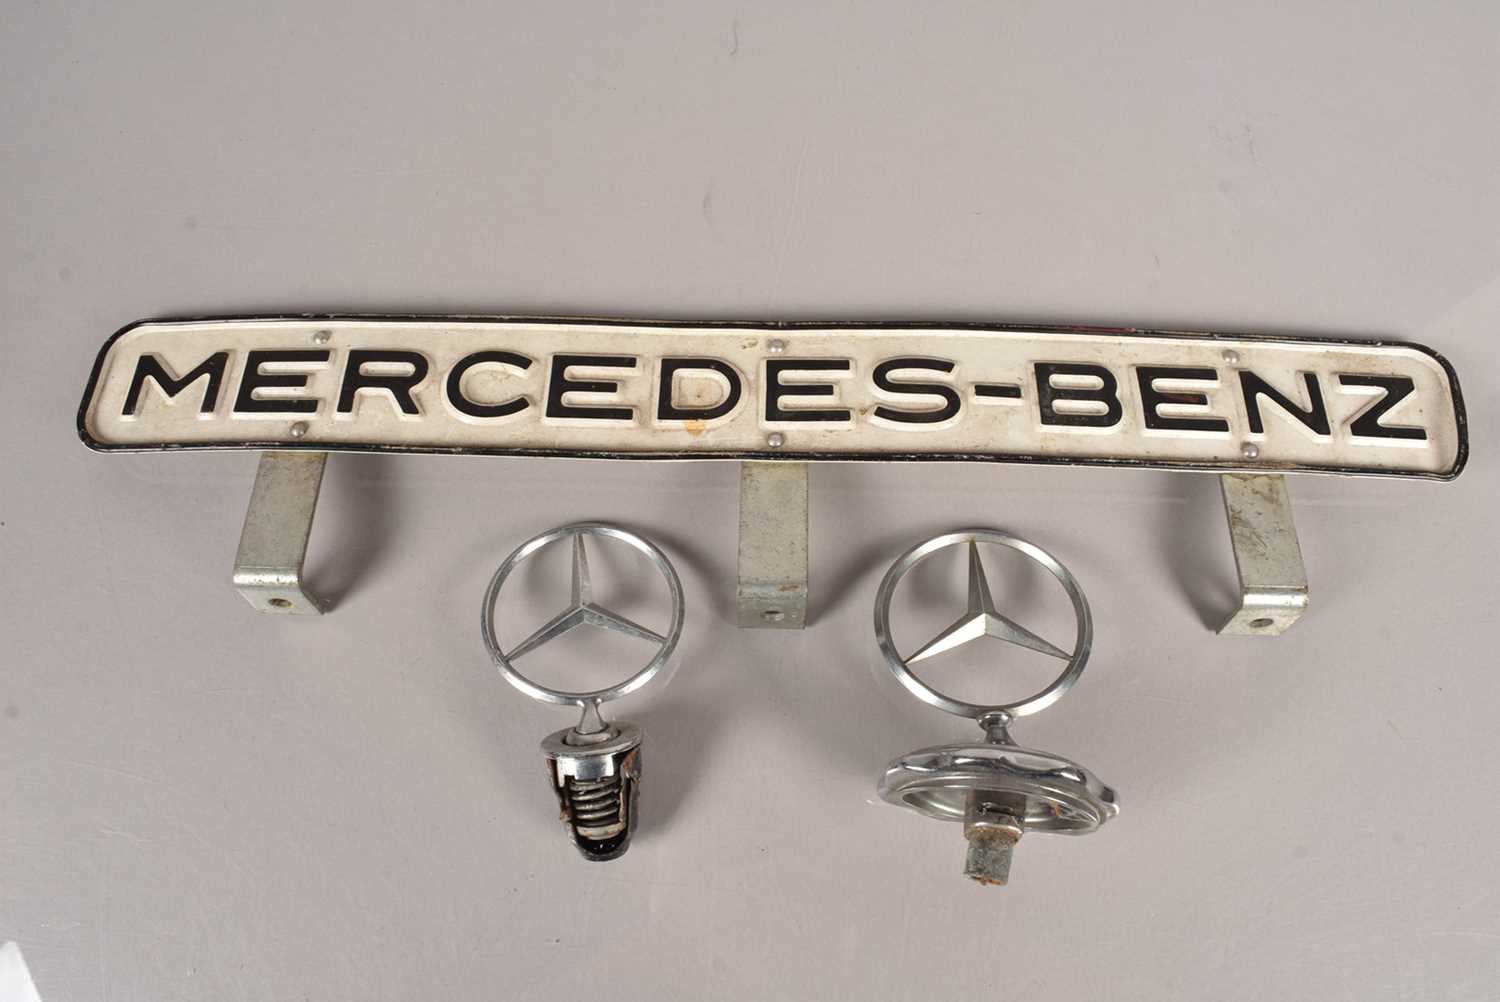 Two Mecedes-Benz Bonnet Badges,